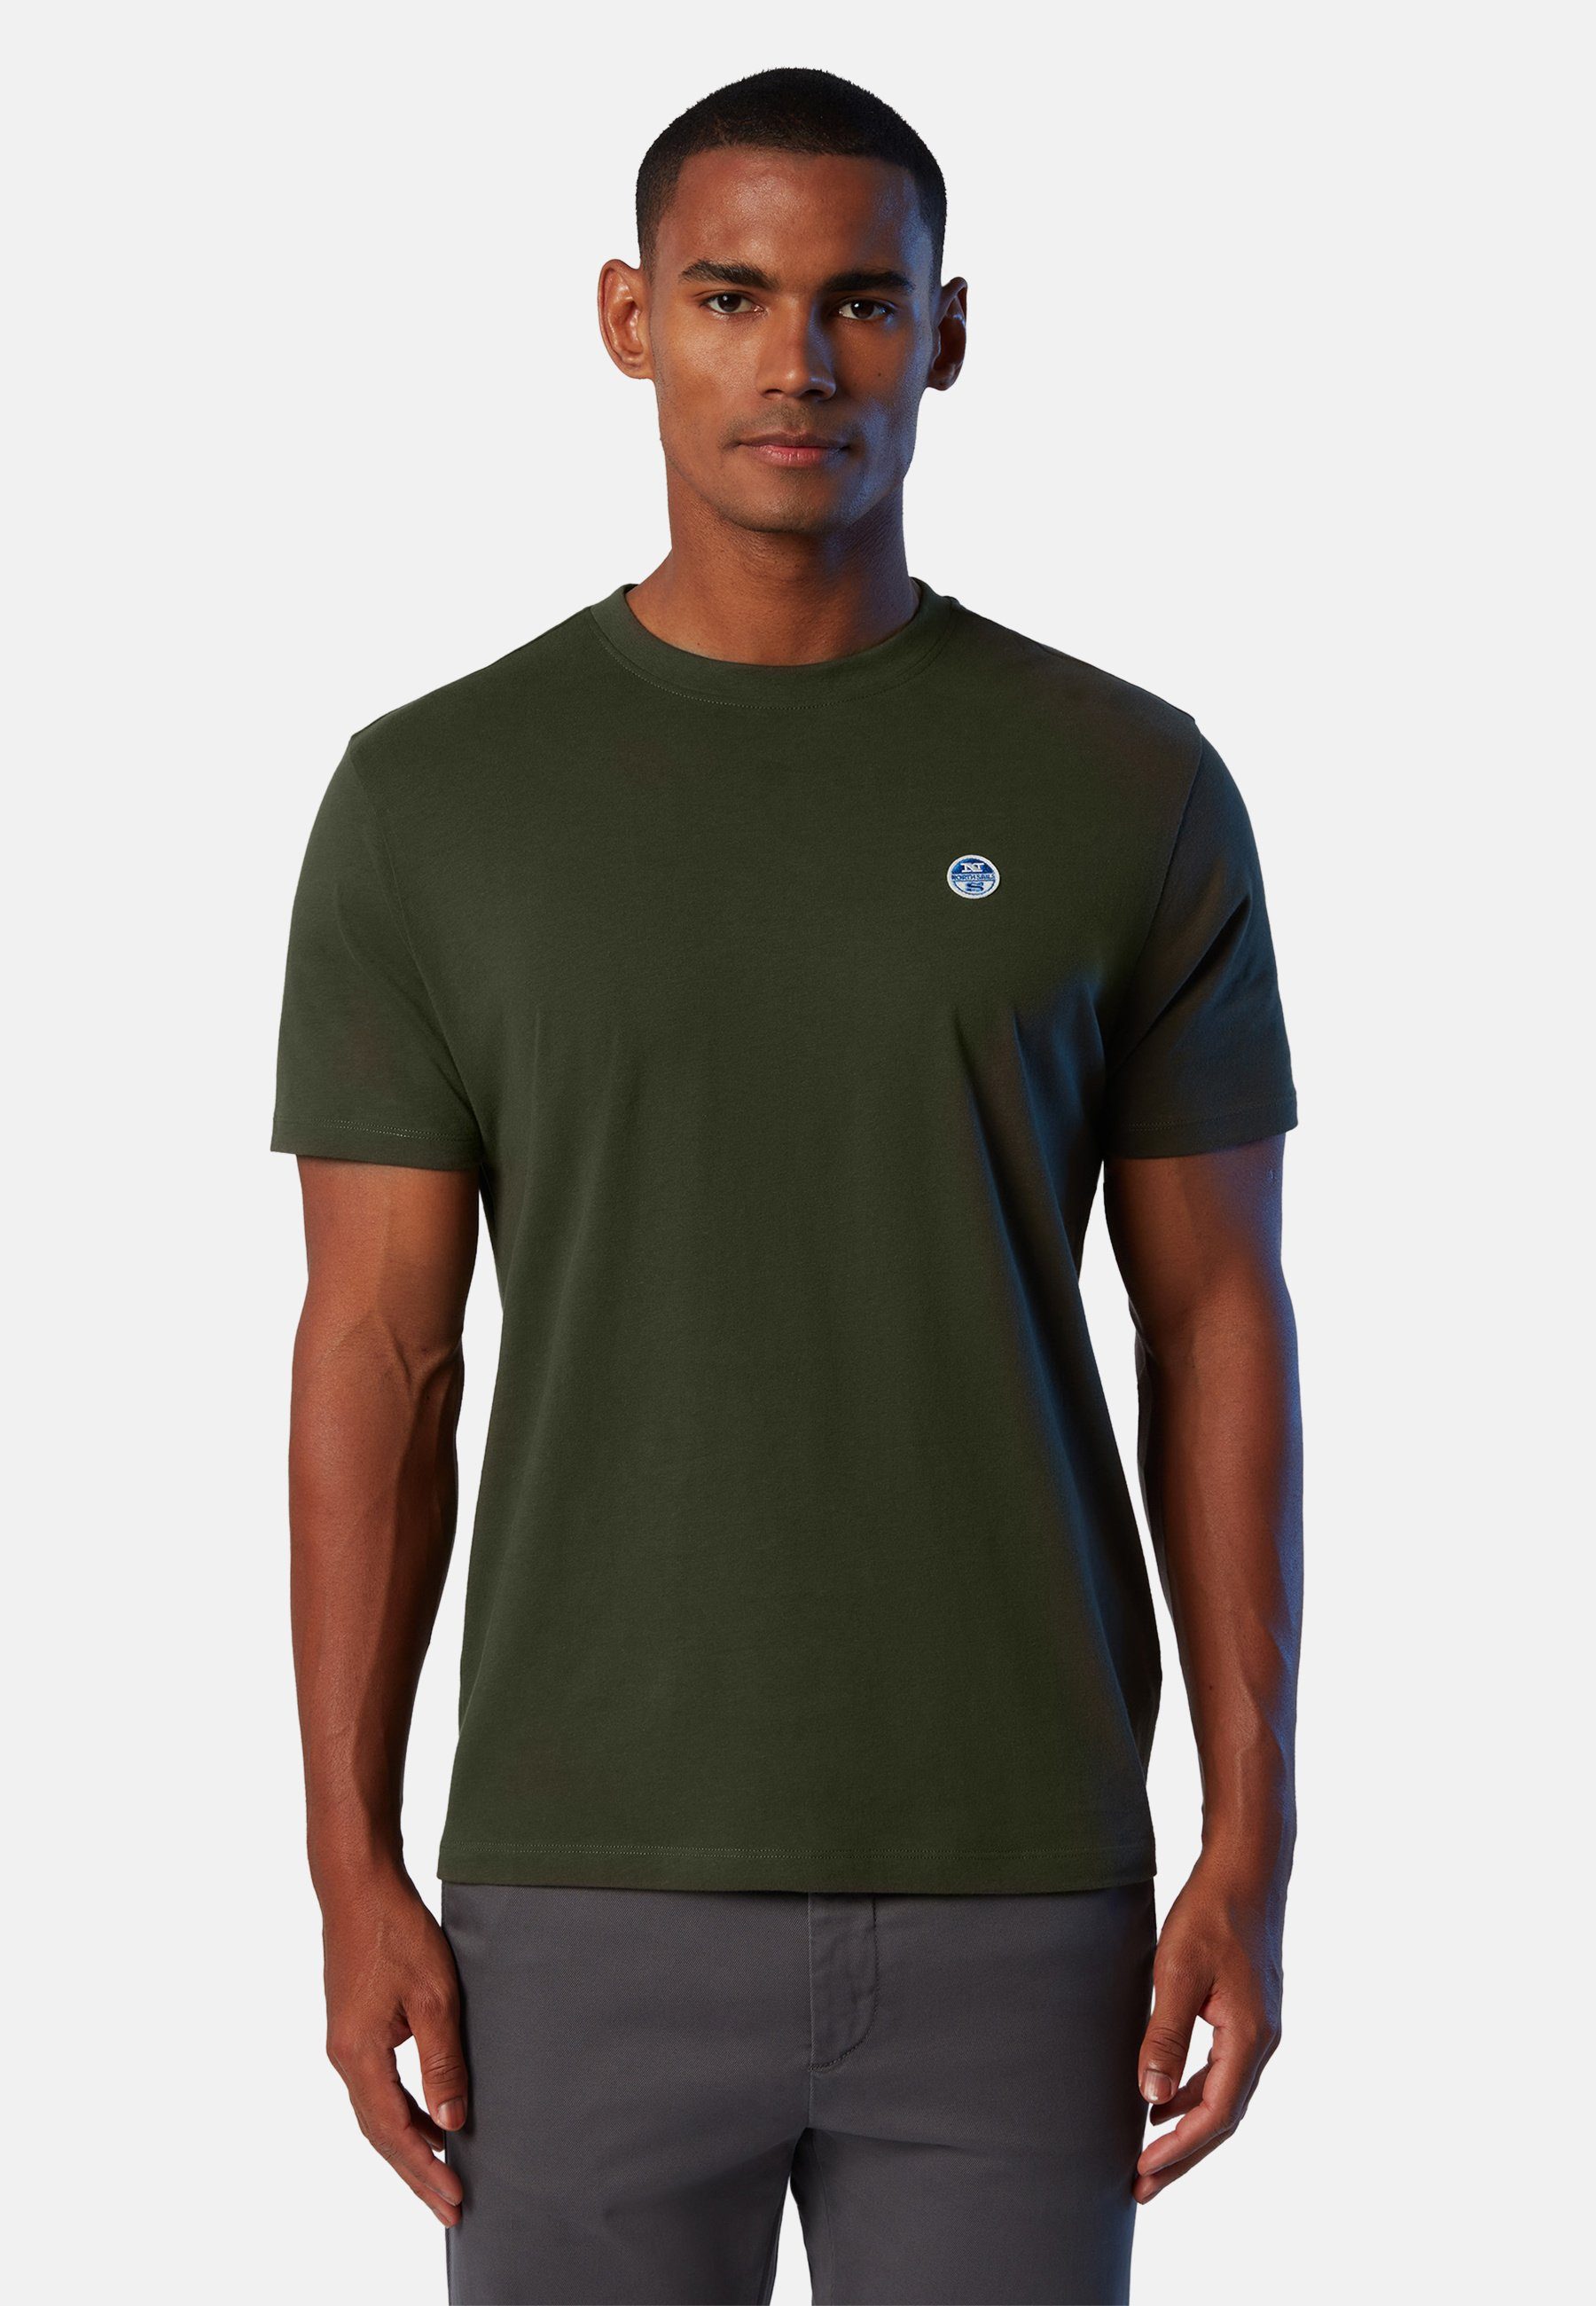 T-Shirt Sails T-Shirt mit Logo-Aufnäher Design North mit klassischem green